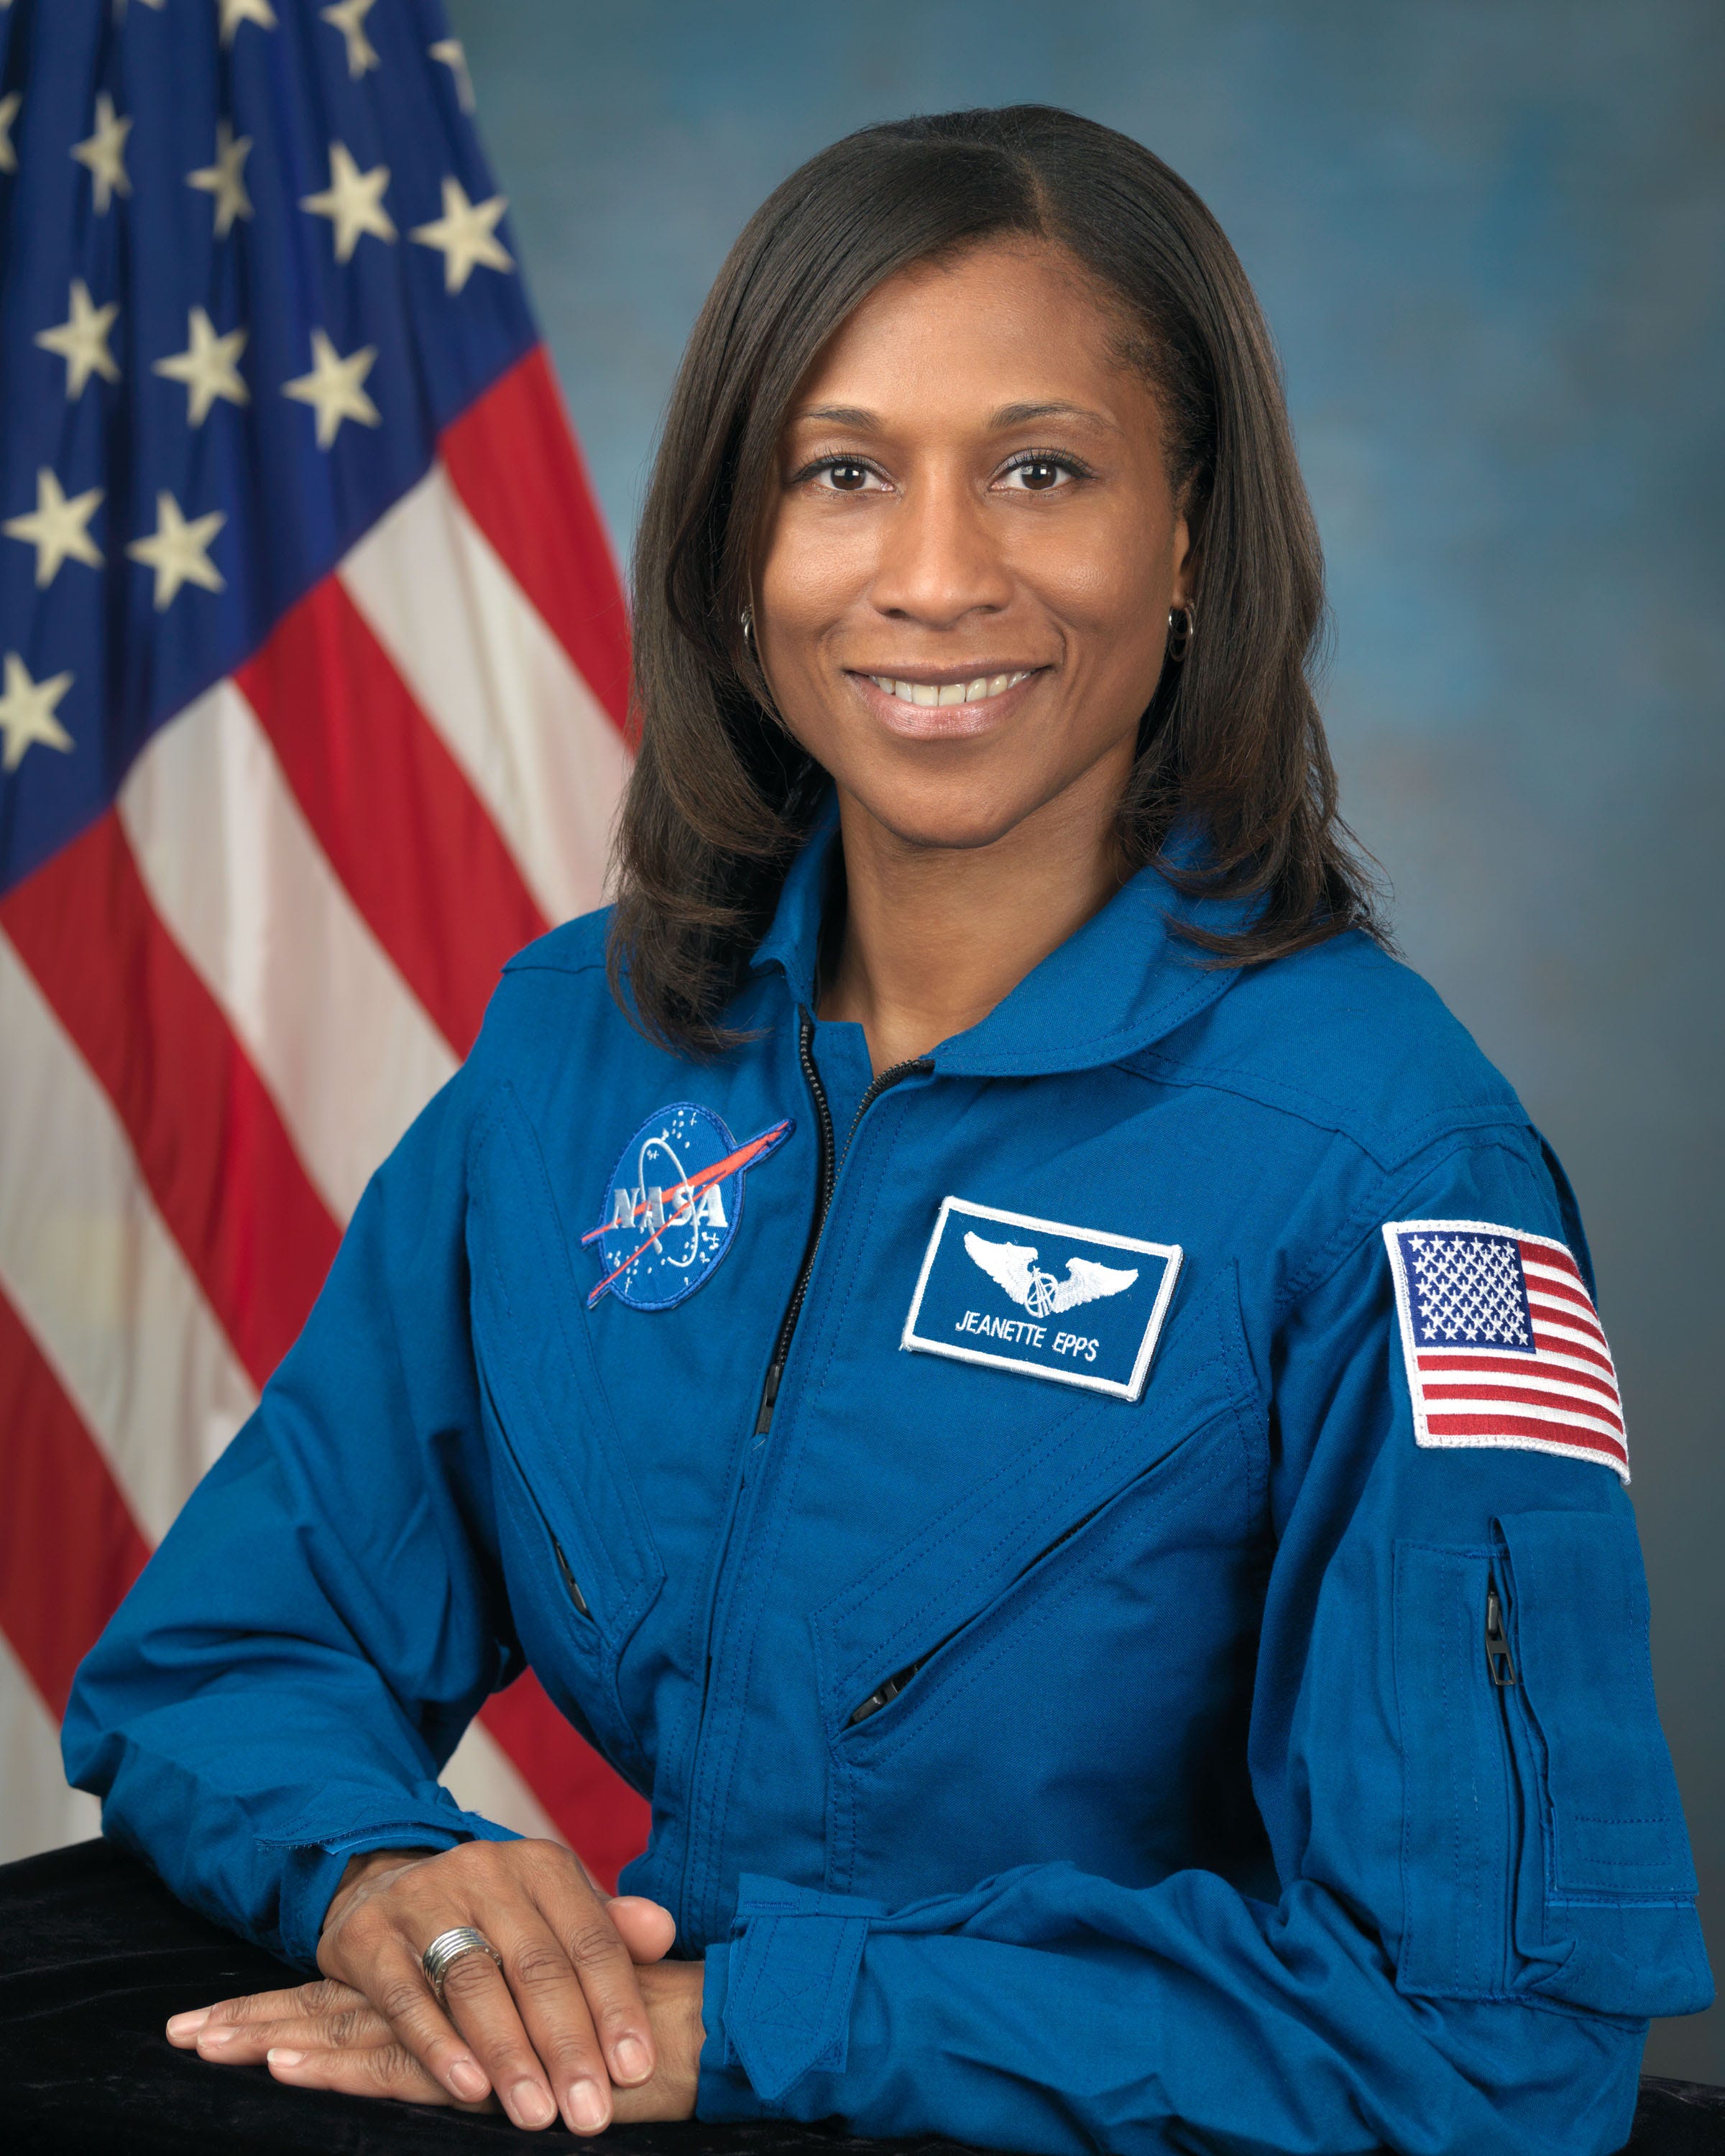 Jeanette Epps bo leta 2021 postala prva črna astronavtka na ISS